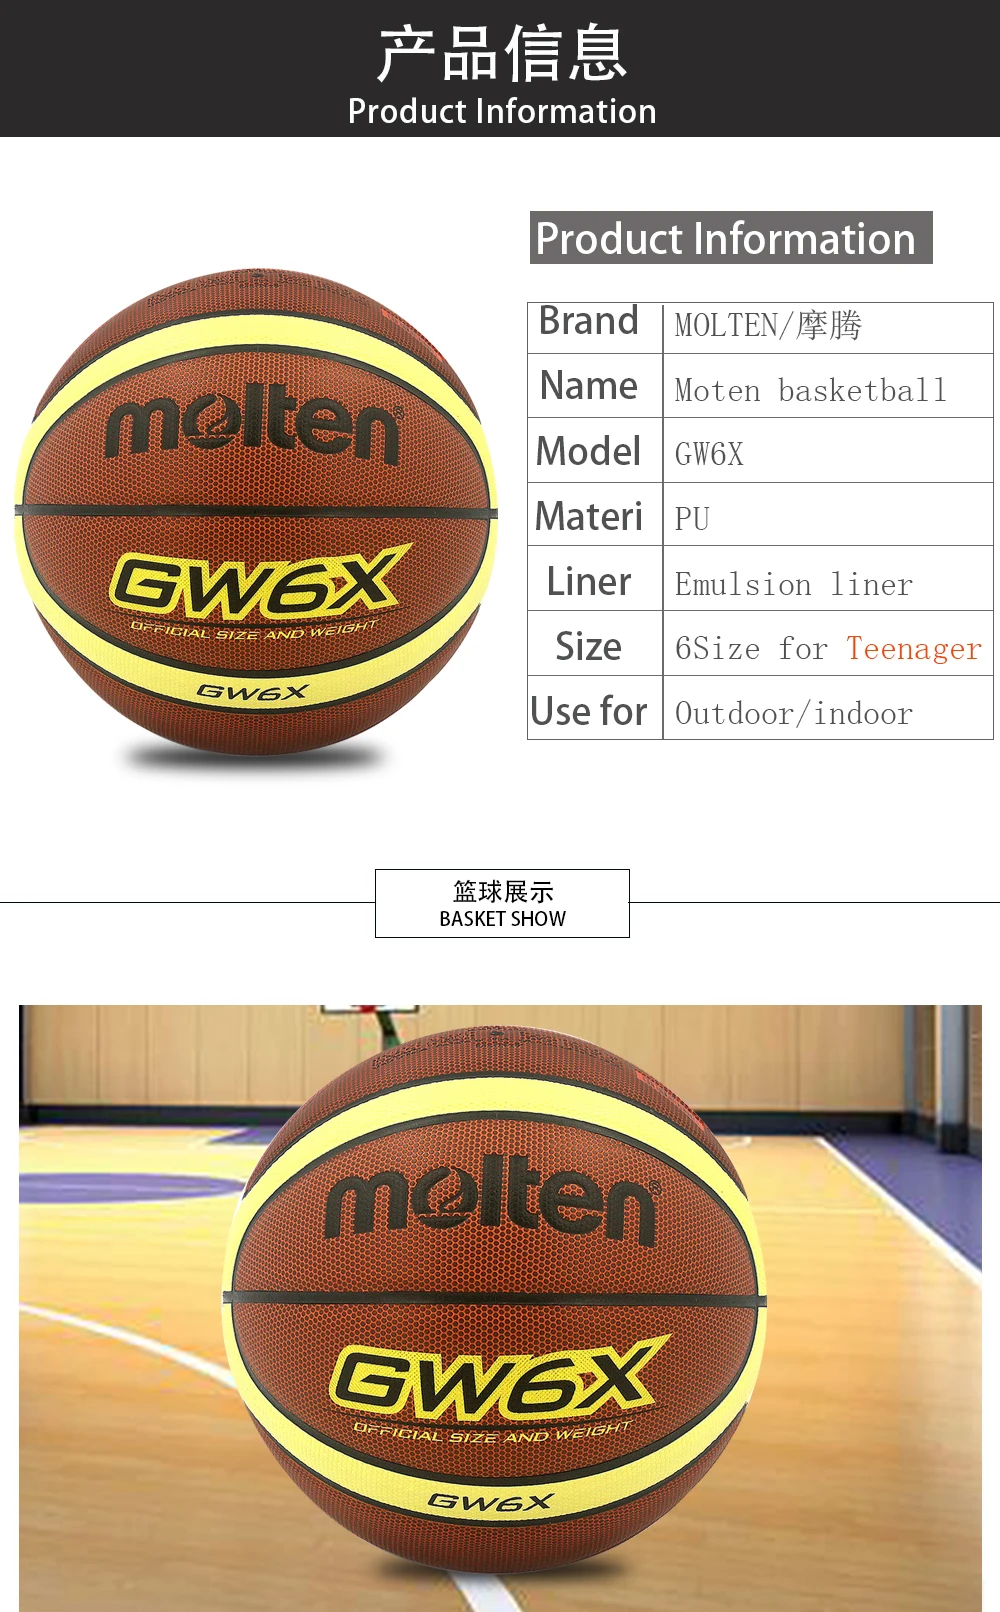 Оригинальный Molten Баскетбол мяч GW6x новый бренд высокое качество натуральной расплавленный PU Материал официальный Size6 Баскетбол